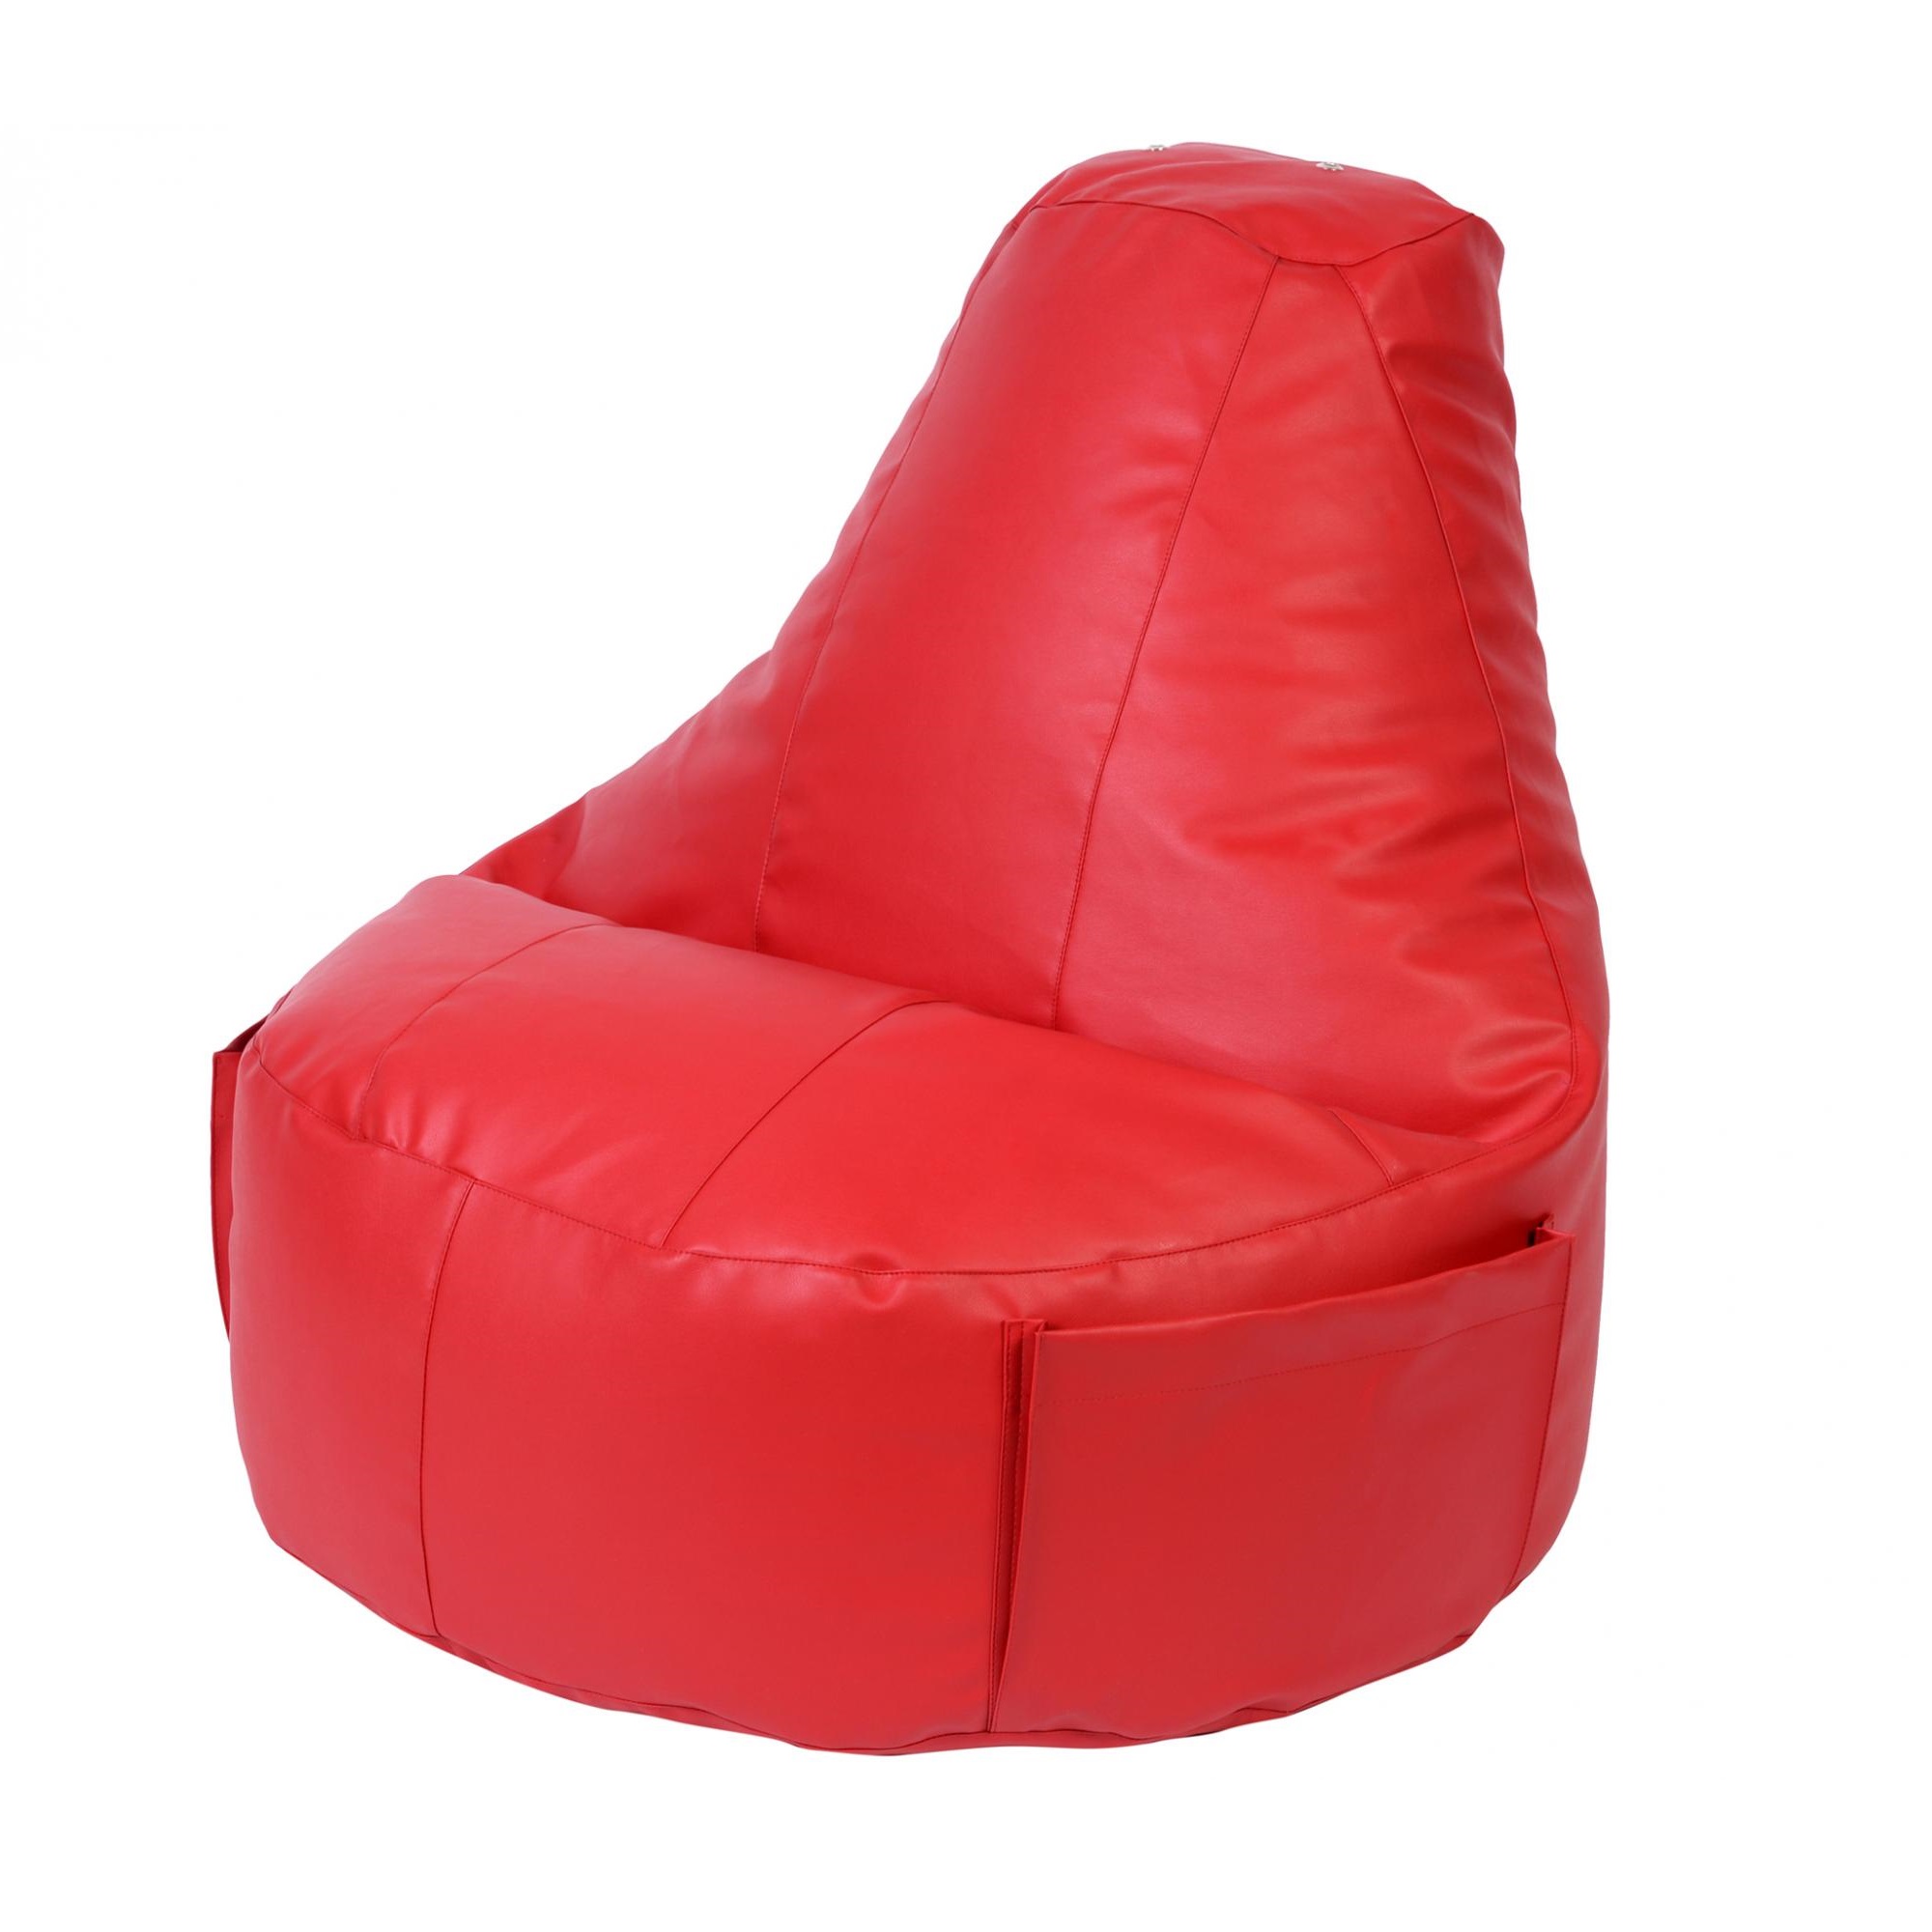 Кресло Dreambag Comfort красное экокожа 150x90 см кресло мешок dreambag черная экокожа xl 125x85